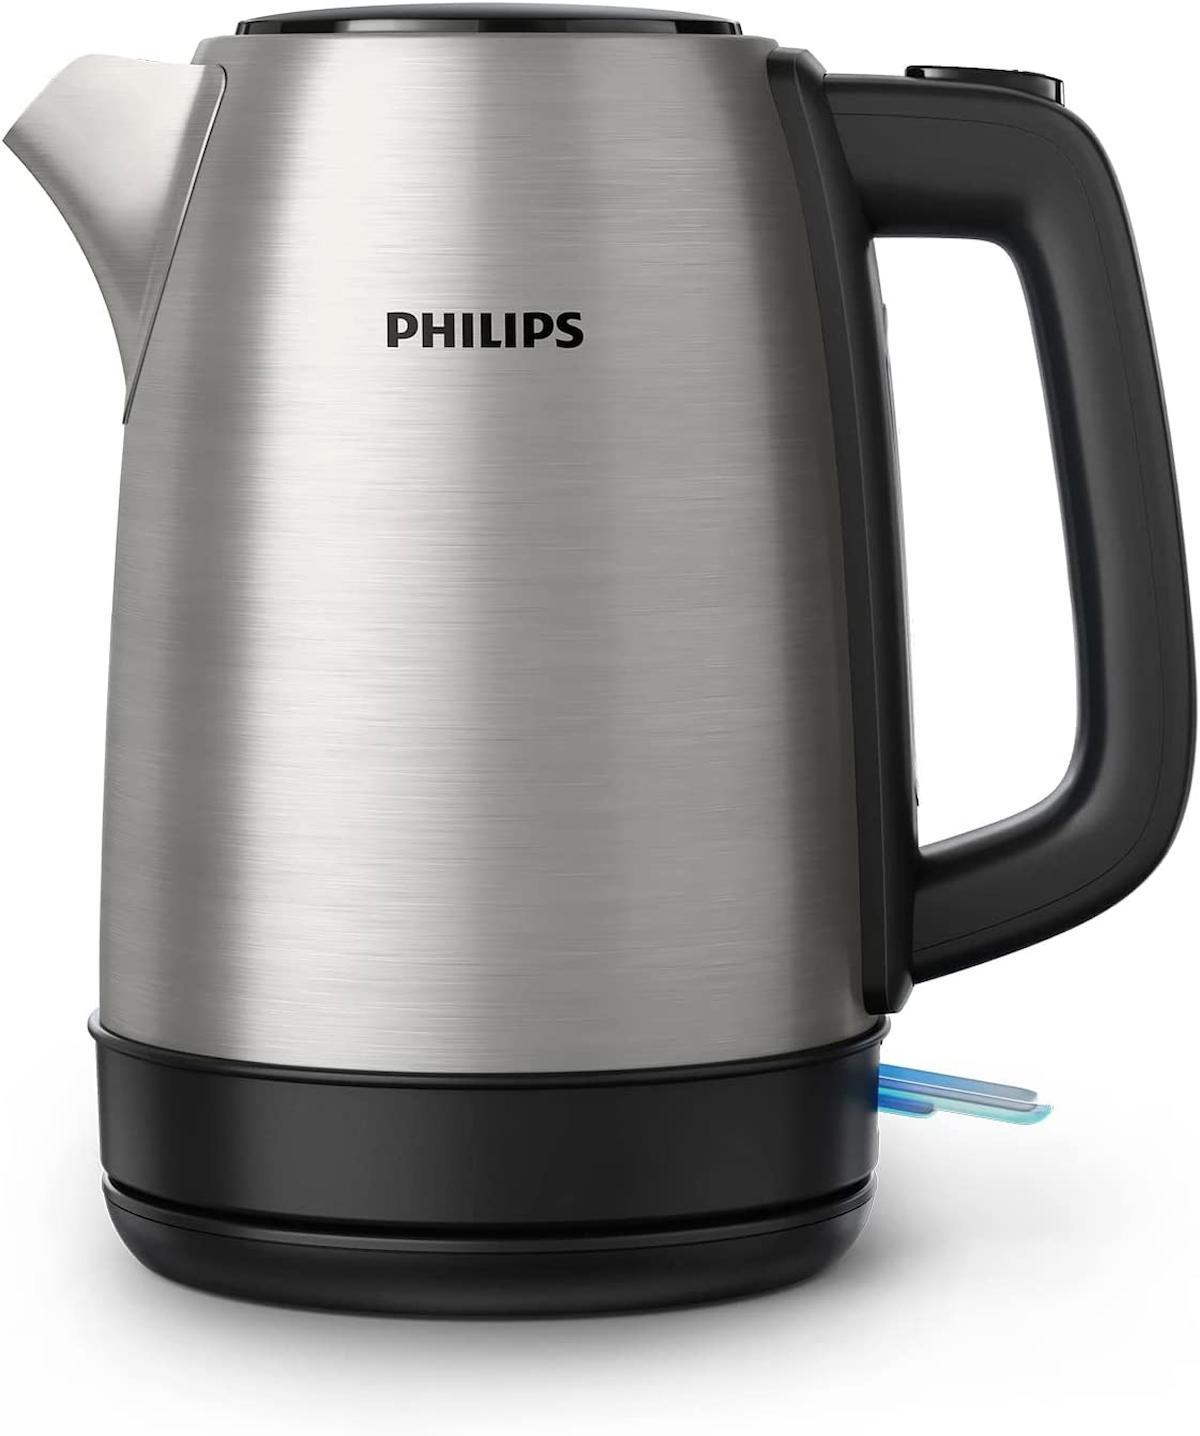 (TEŞHİR ÜRÜNÜ) Philips HD9350/90 Daily Collection 2200 W 1.7 lt Çelik Kettle